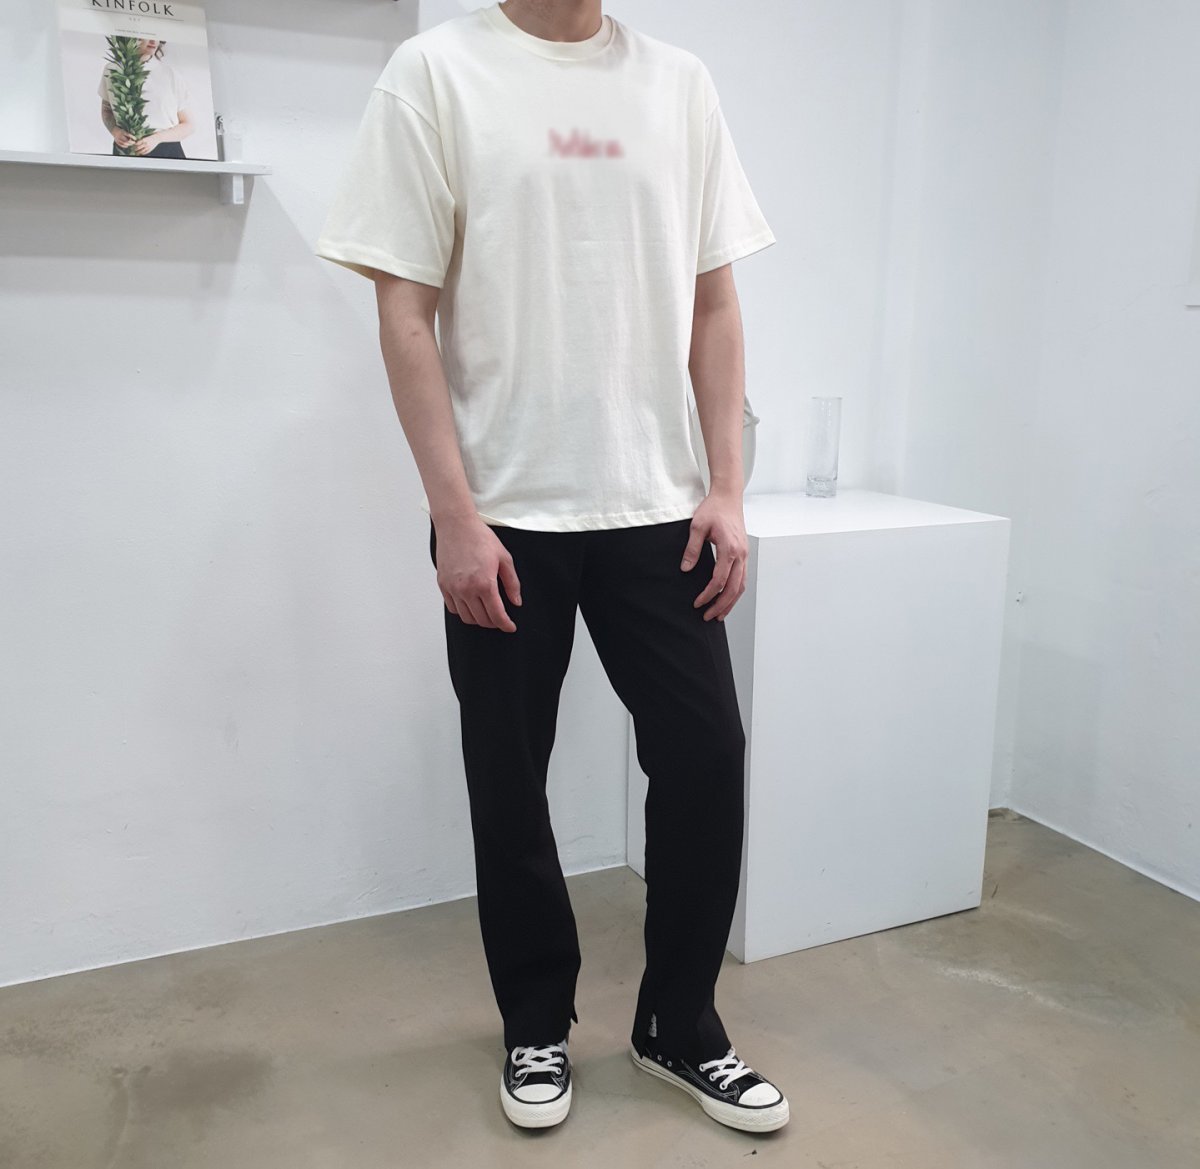 고선민 씨가 서울에 있는 한 온라인 패션쇼핑몰에서 피팅 모델로 일할 당시 찍은 사진. 사진제공 고선민 씨